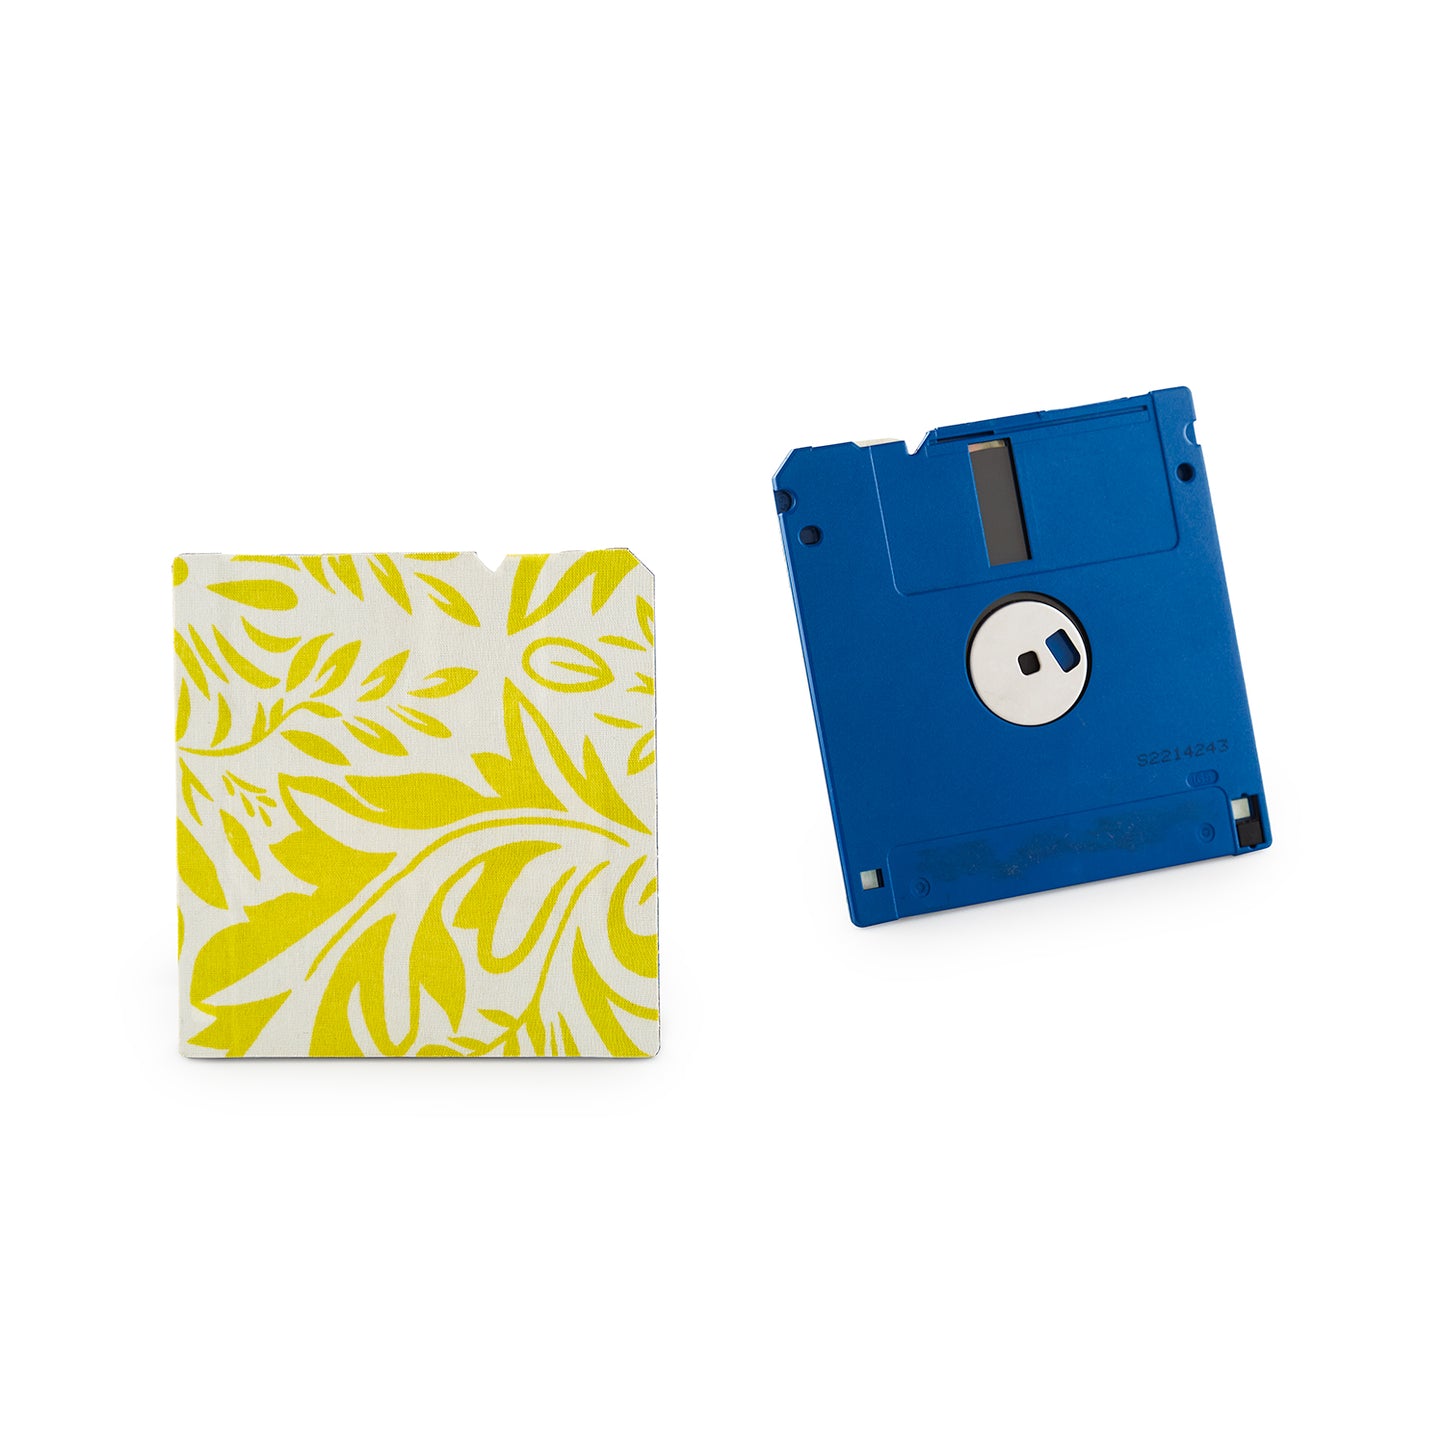 White -Floppy Disk Coaster Set of 2